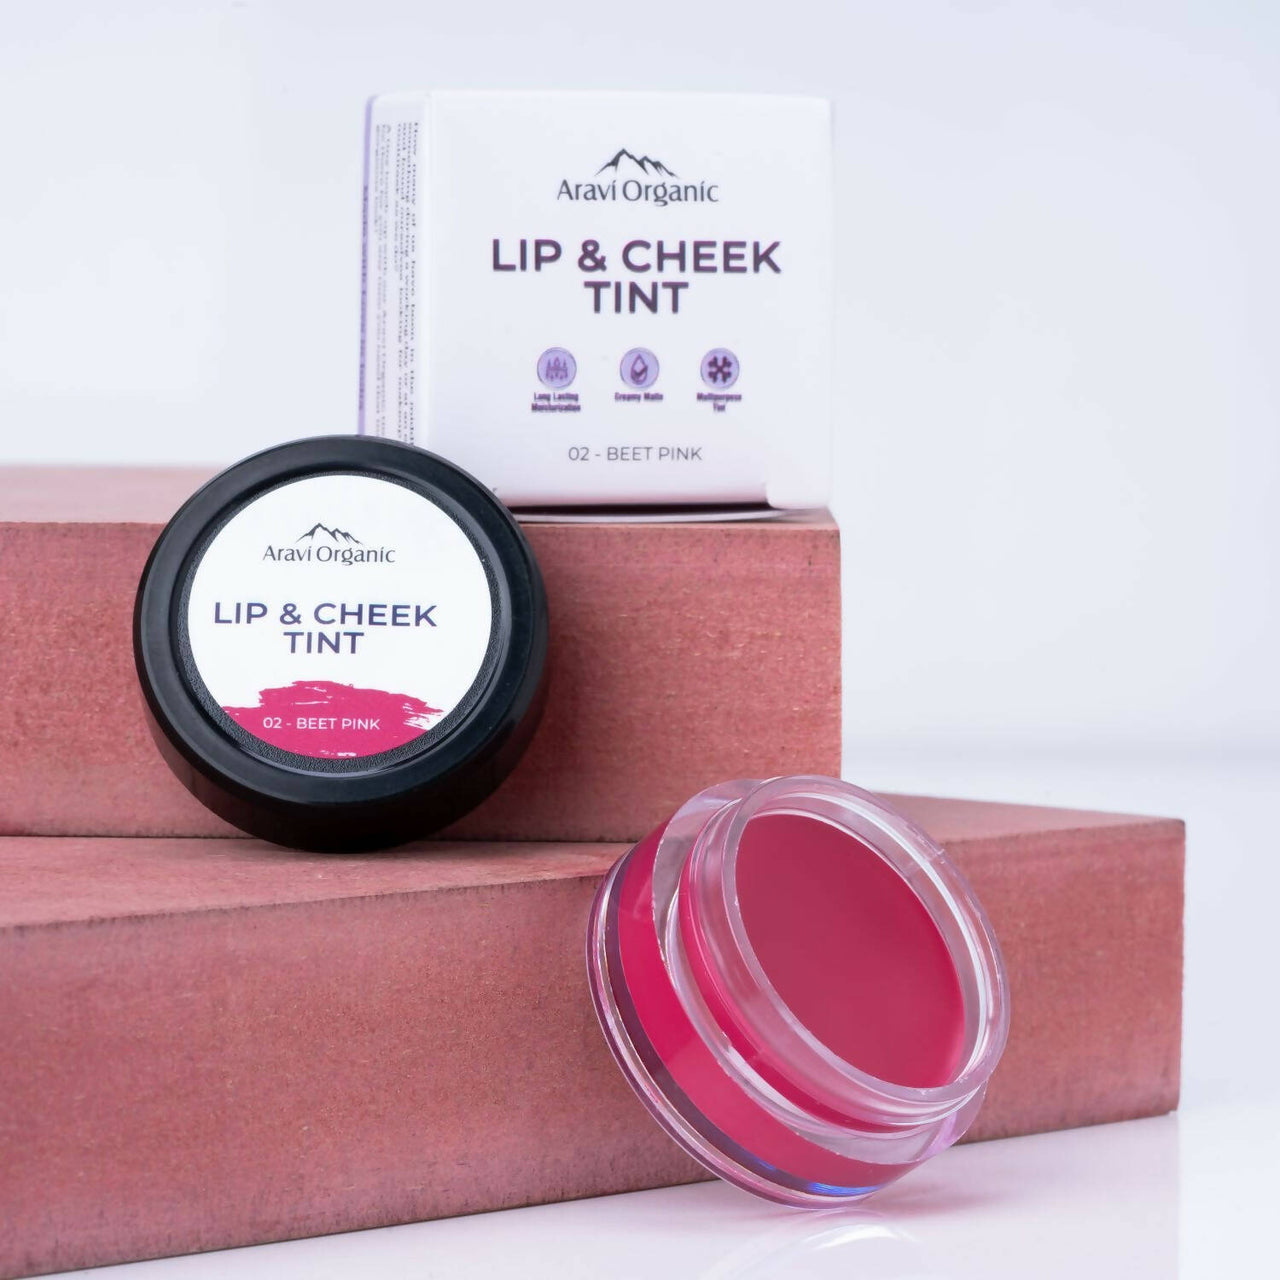 Aravi Organic Everyday Vegan Lip and Cheek Tint Balm Lip Tint - Beet Pink - Distacart